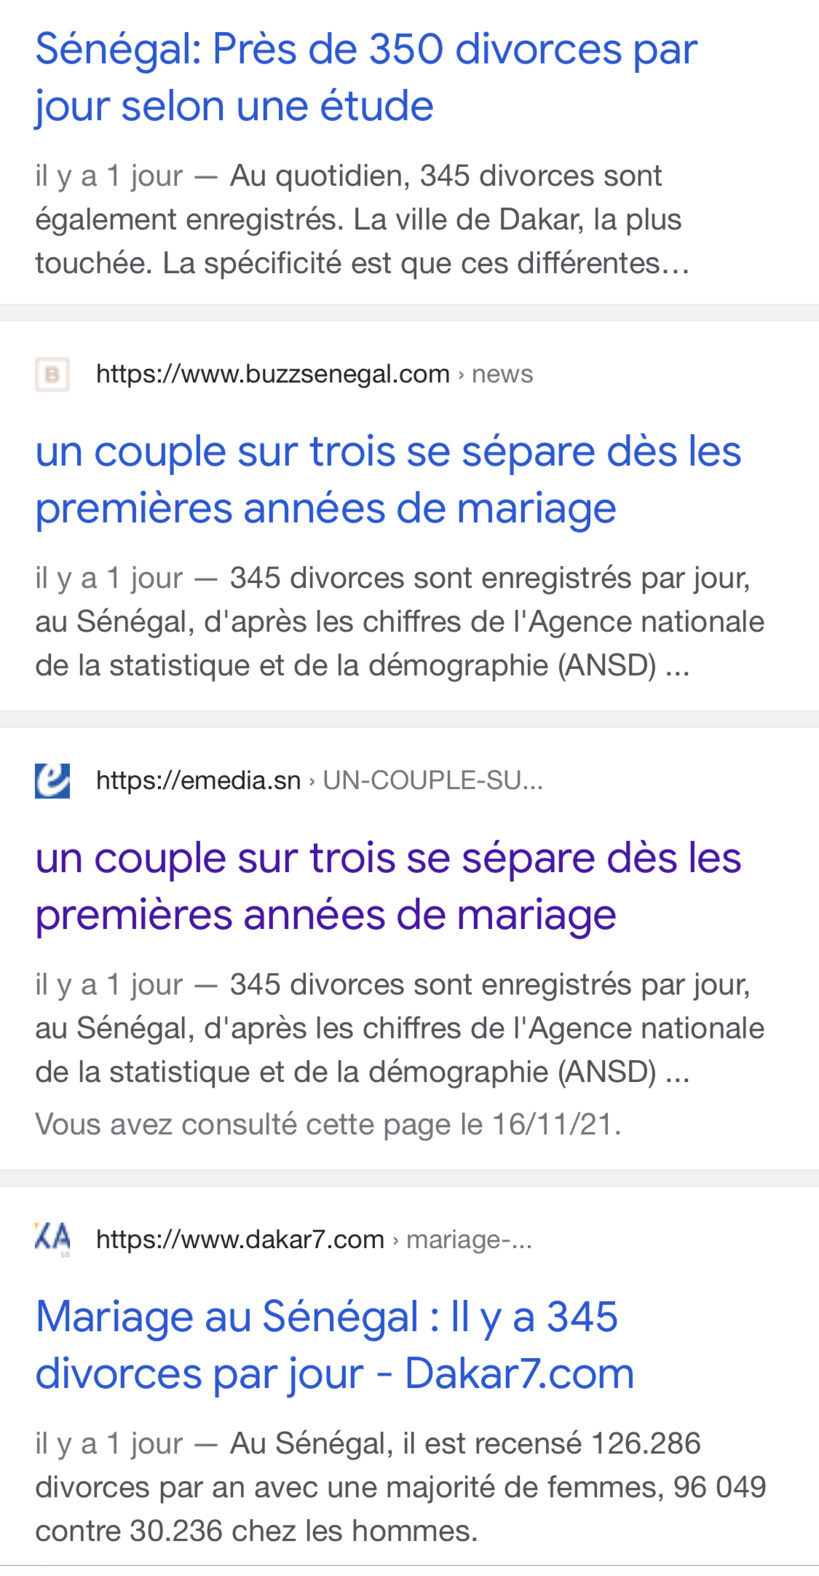 NON, l’Ansd n’a jamais dit qu’il y a 345 divorces par jour au Sénégal